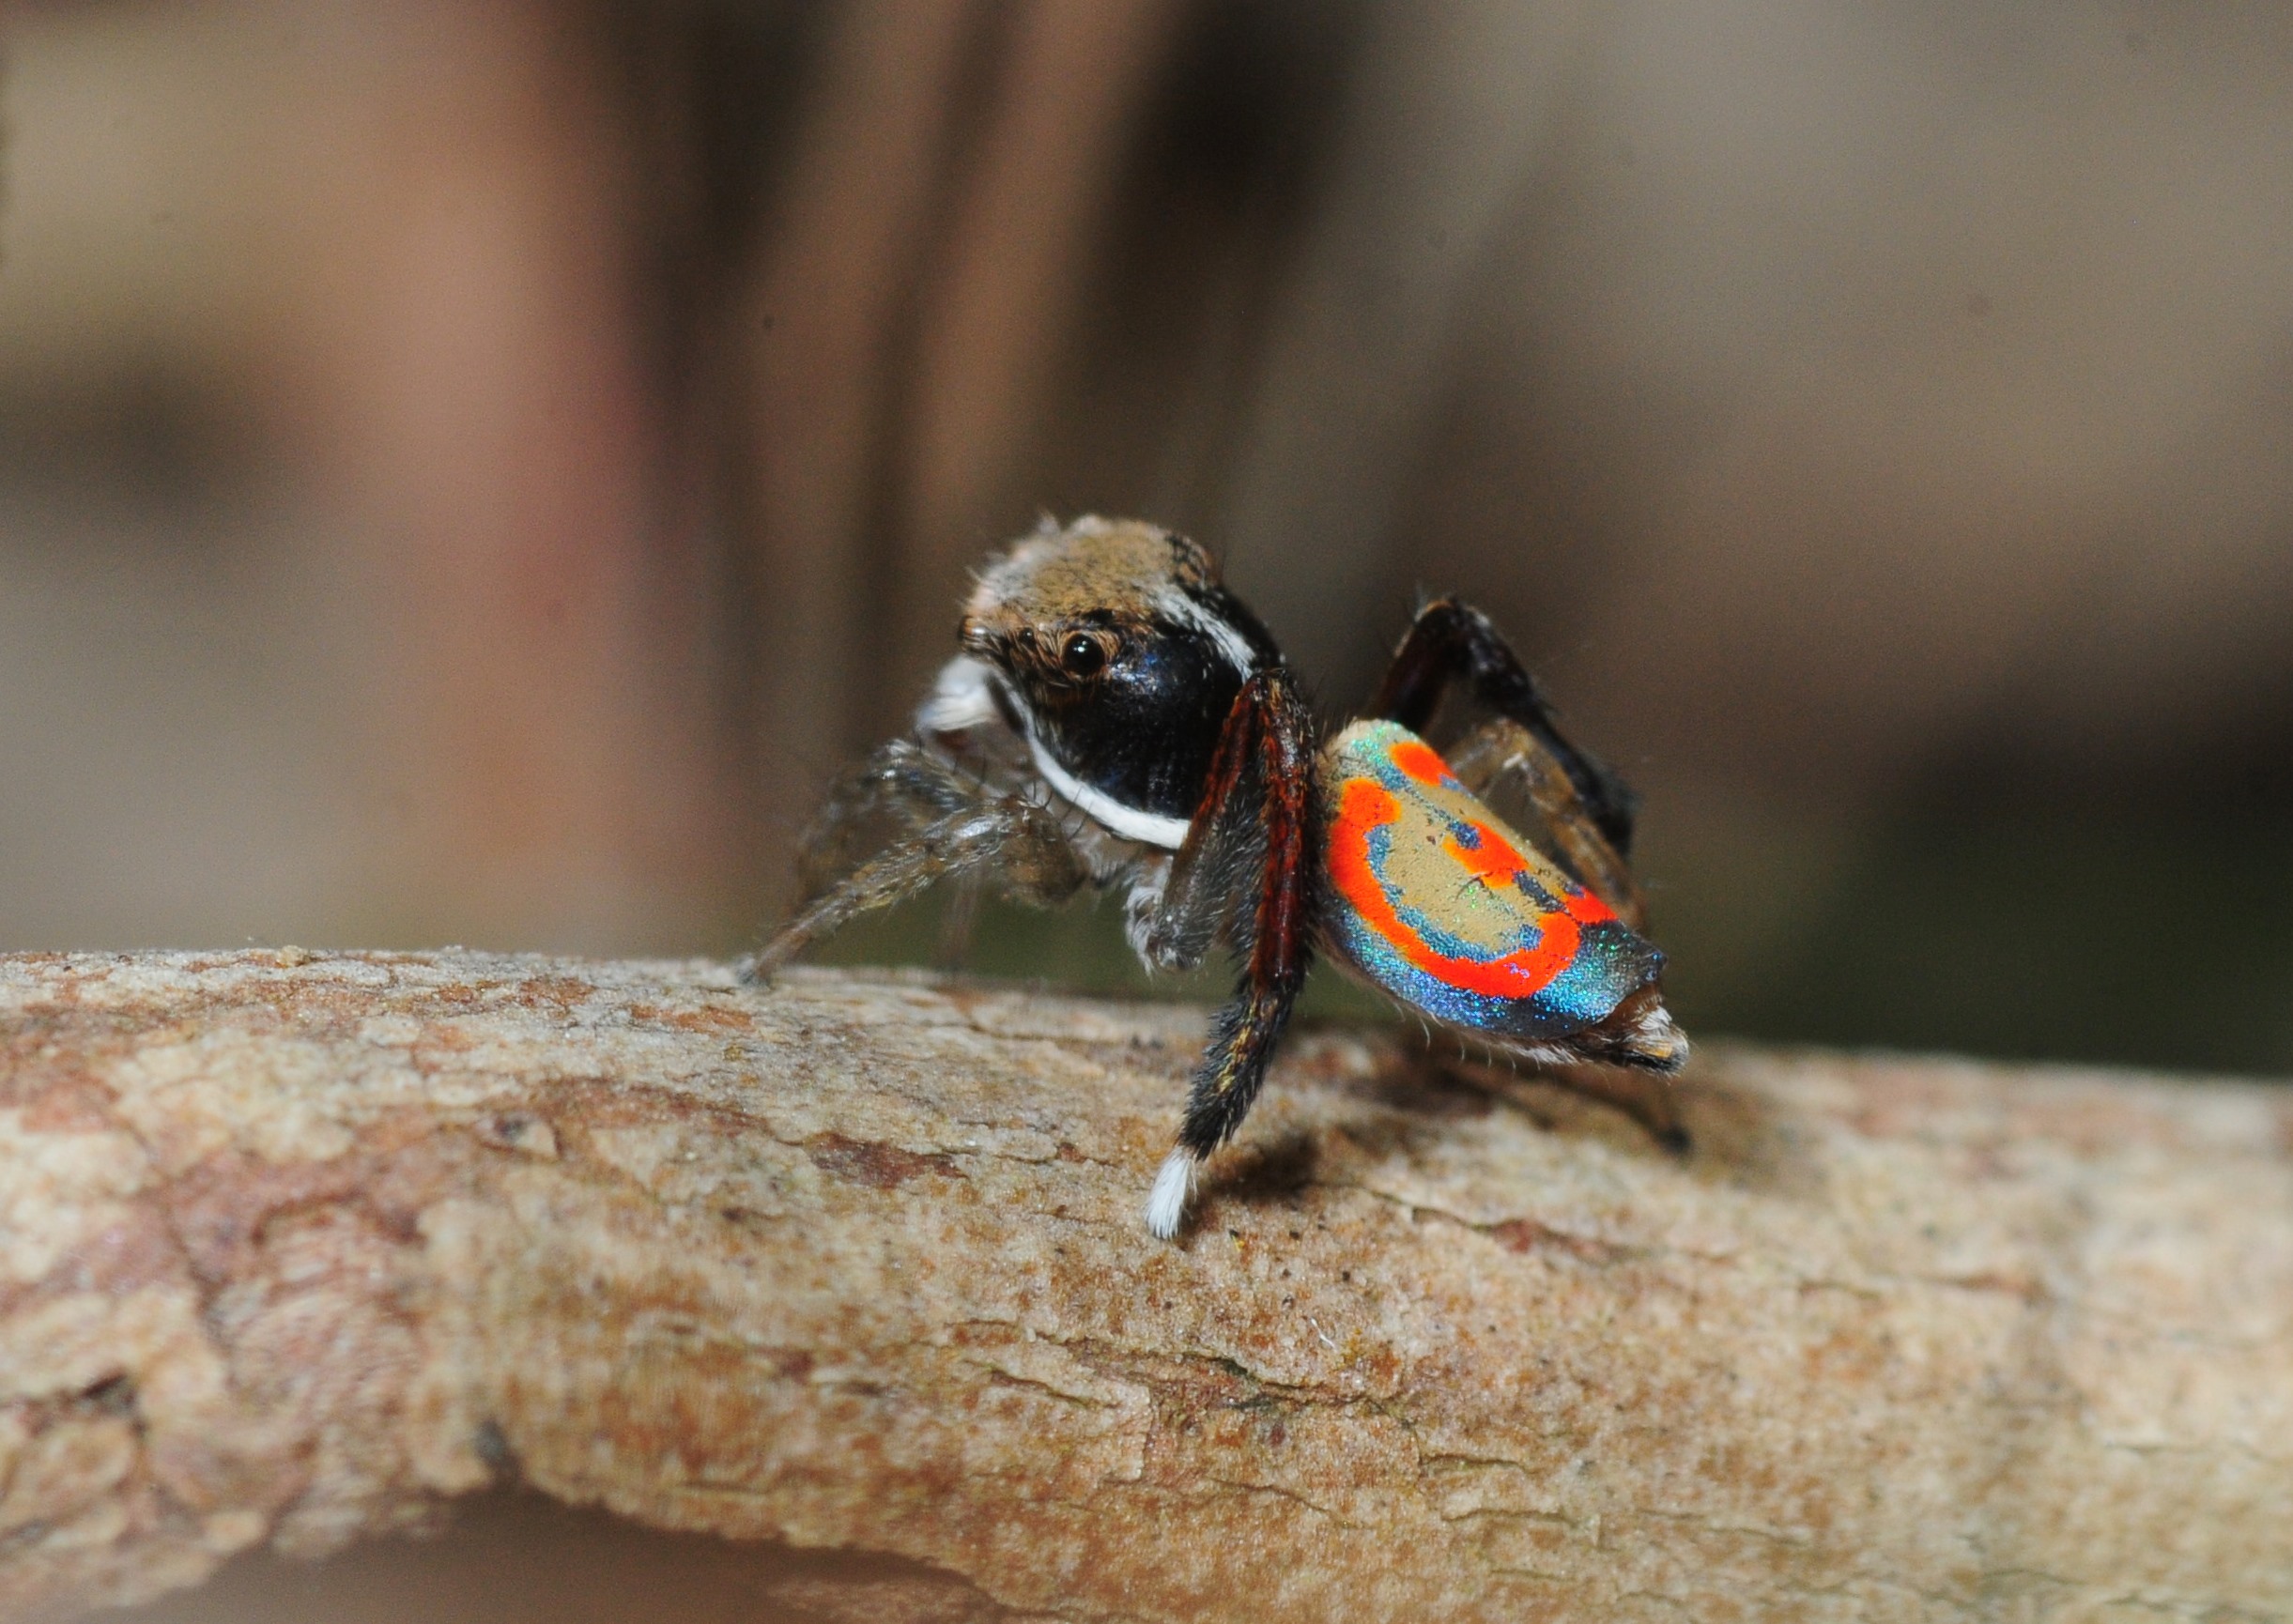 Maratus pavonis, a peacock spider